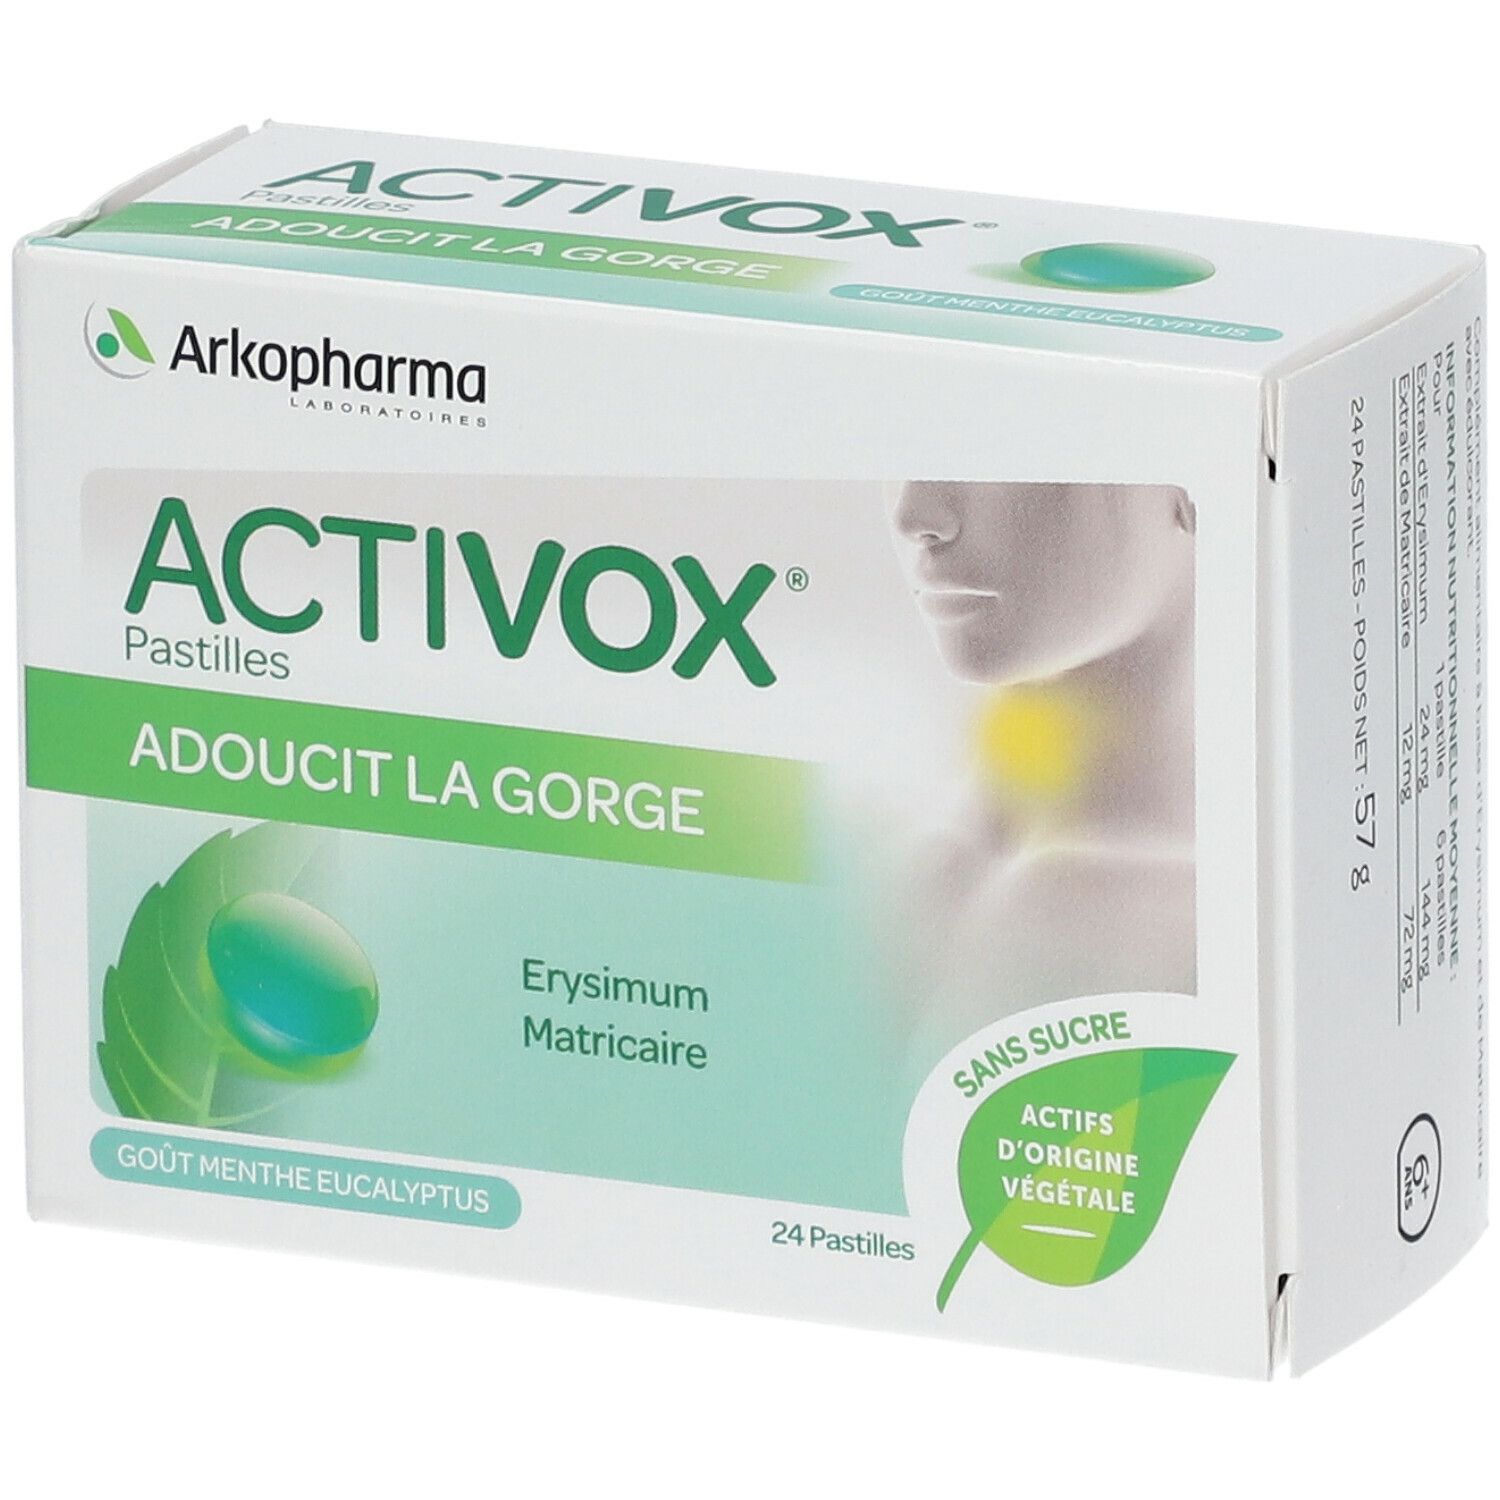 Arkopharma Activox pastilles pour la gorge sans sucre à la menthe